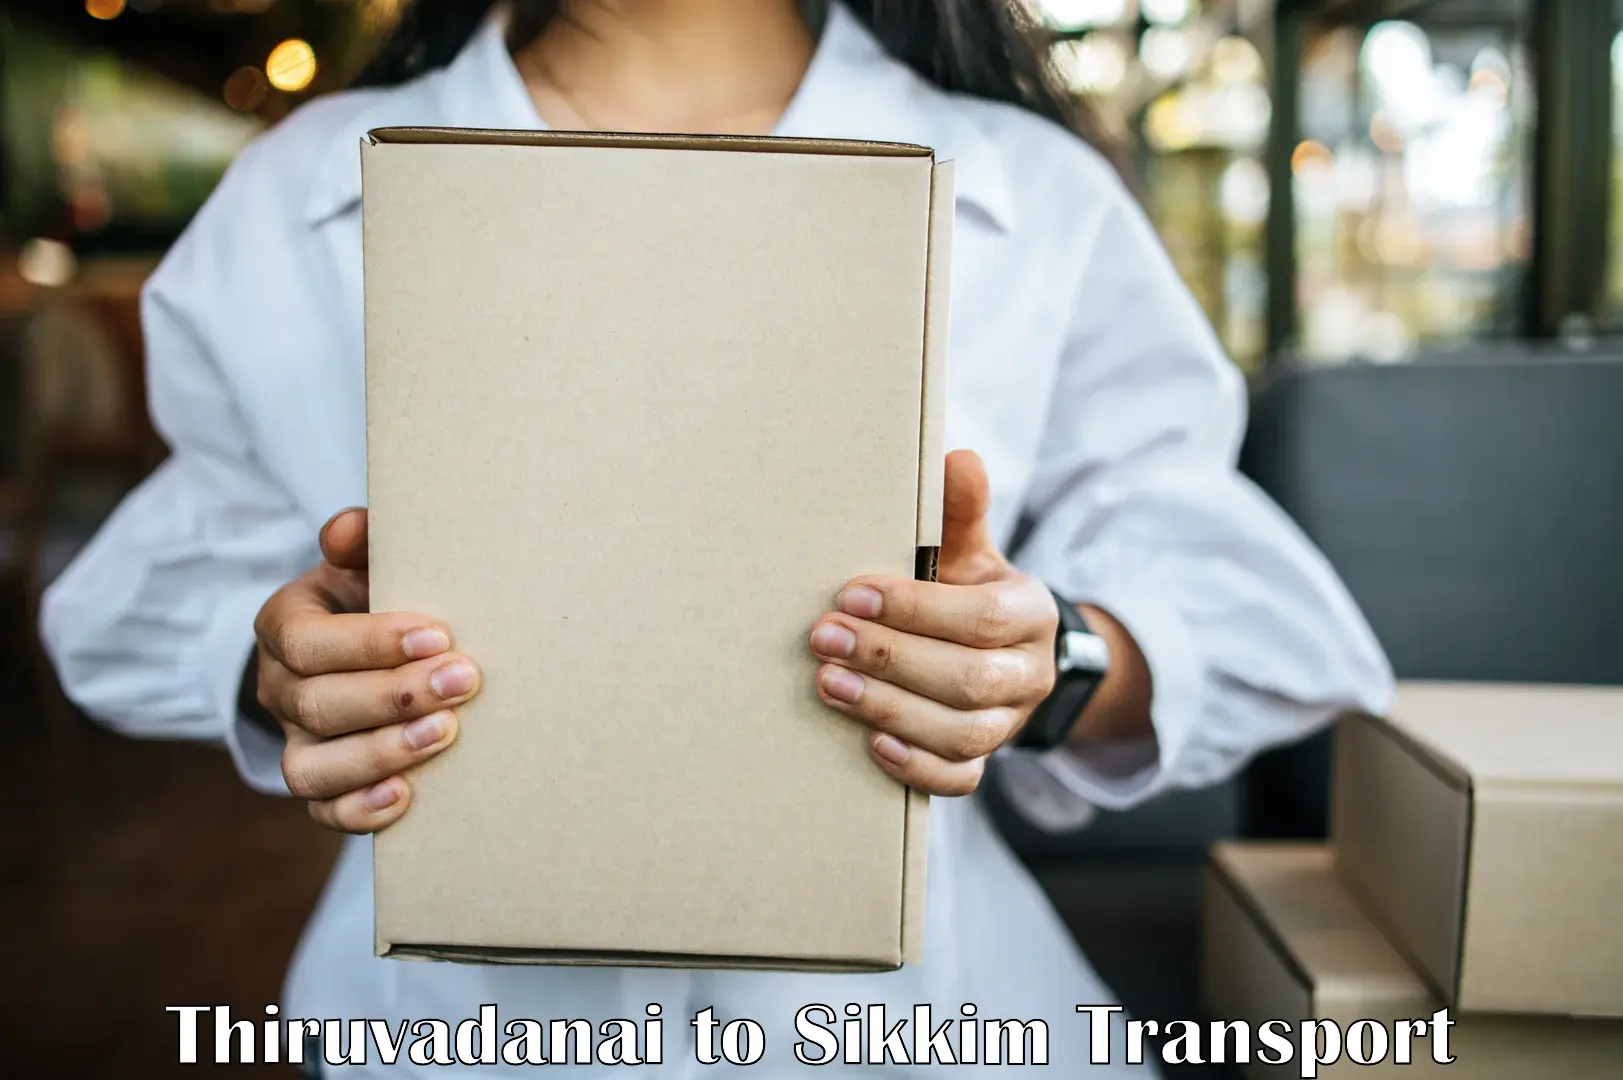 Transport in sharing Thiruvadanai to Gangtok